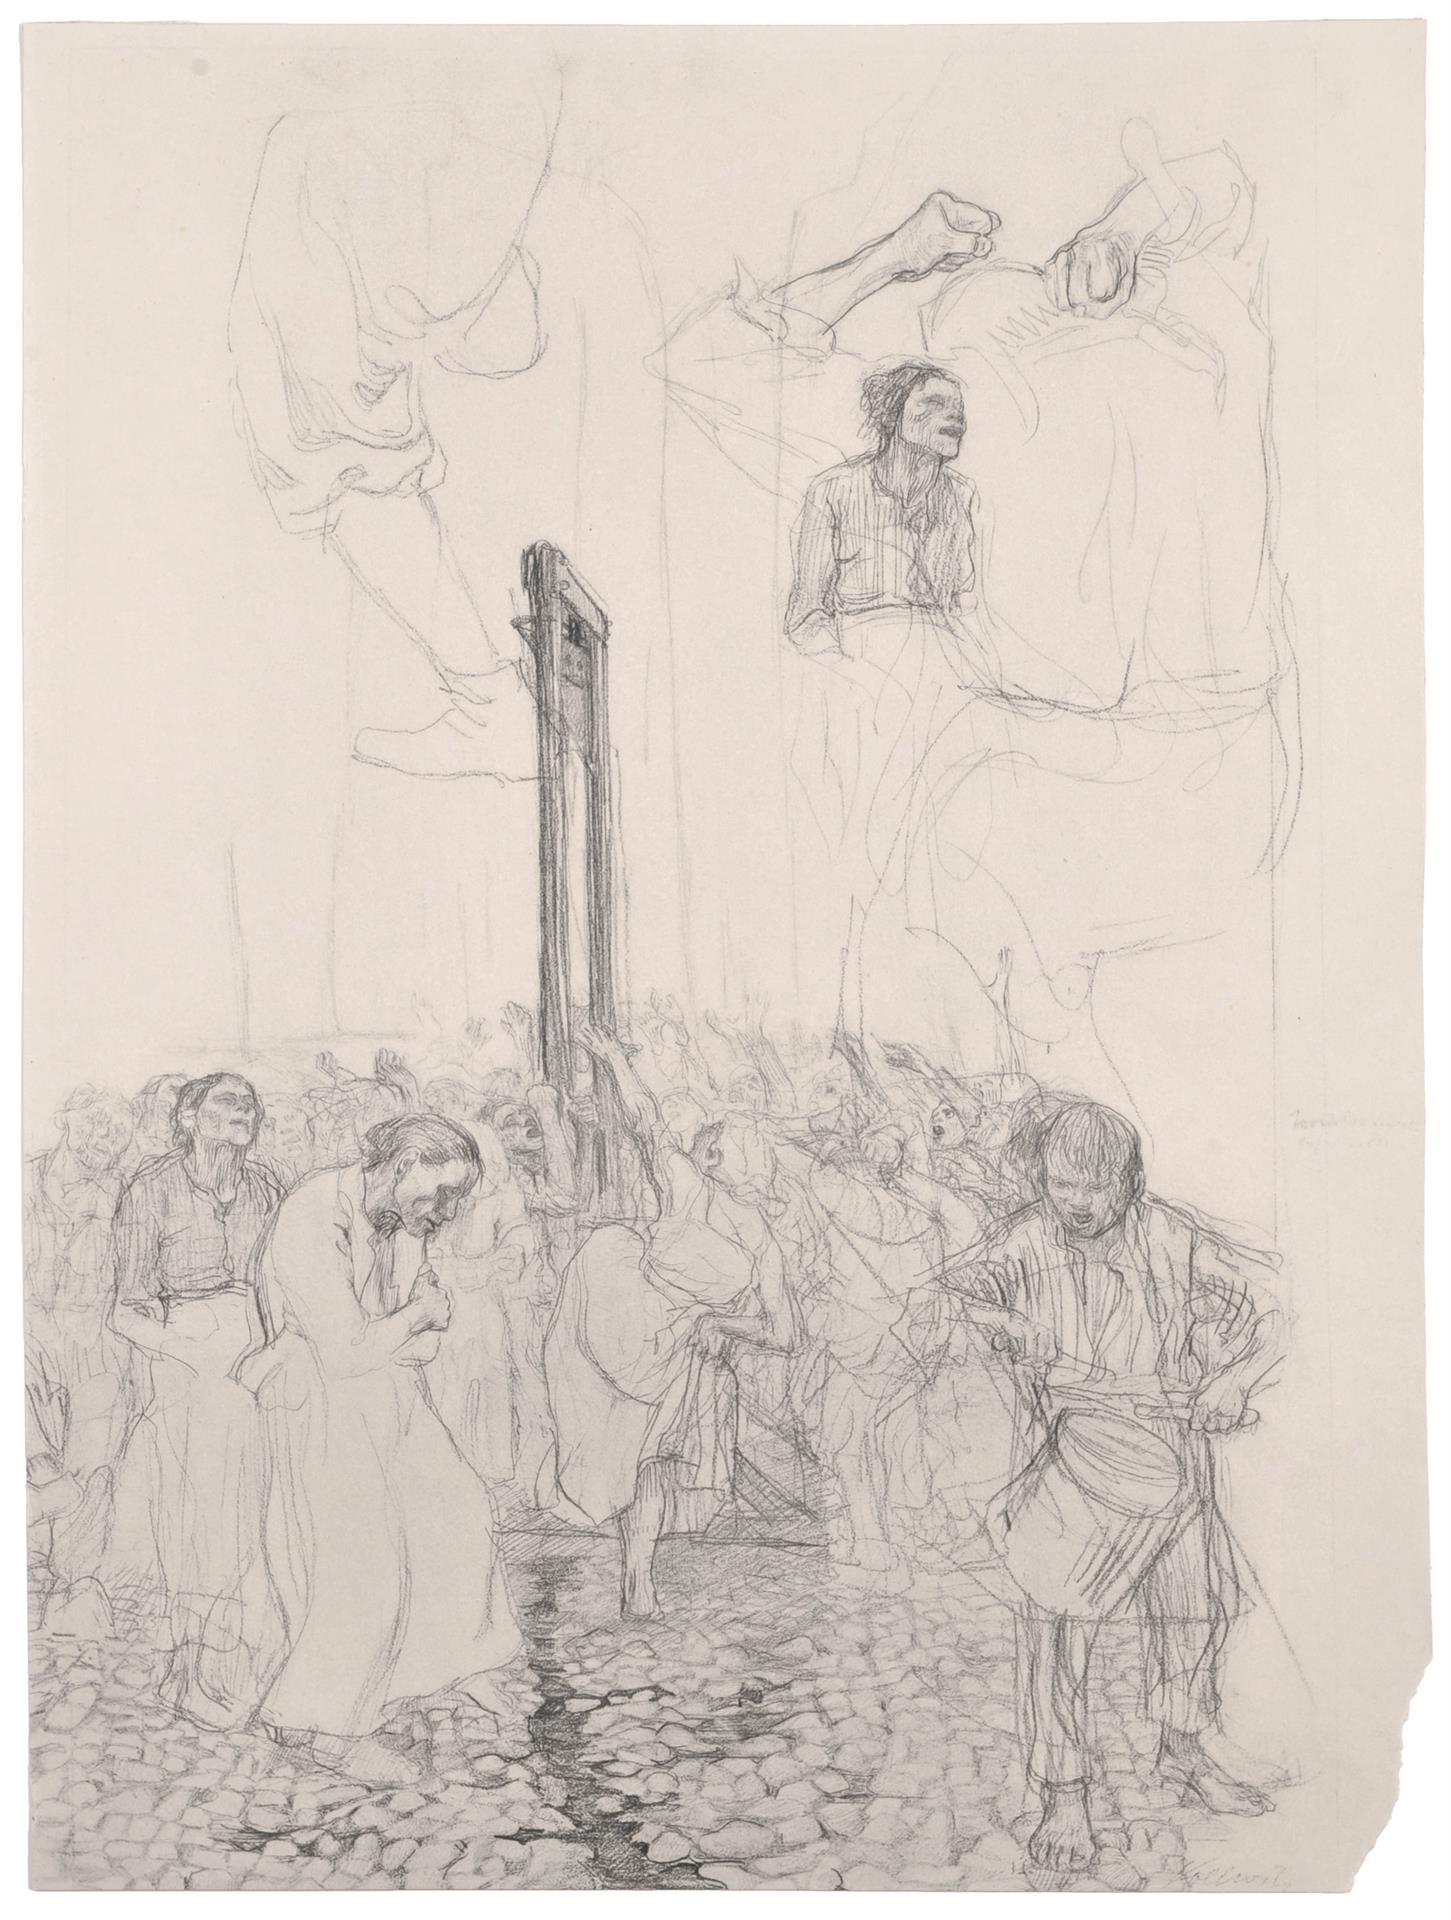 Käthe Kollwitz, Danse autour de la guillotine, planche 9 du Richter-Mappe, facsimilé du dessin NT 179, 1901, mine de plomb, collection privée, Berlin